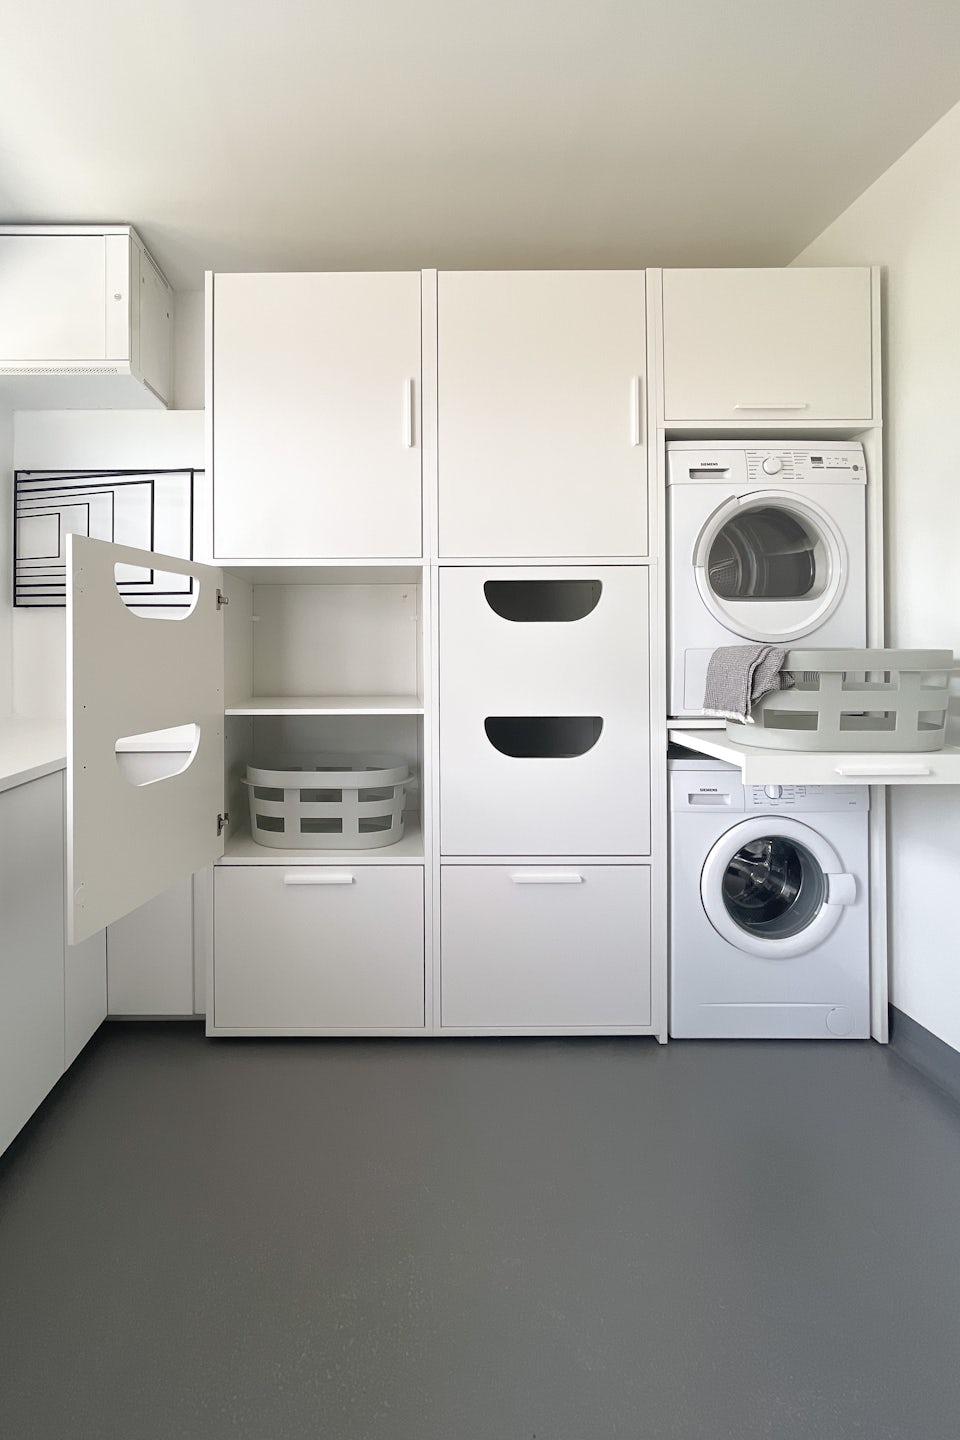 Wasmachine ombouwkast voor de droger en wasmachine. De kast kan worden ingebouwen in je (bij)keuken. De kast van wastoren heeft extra opbergruimte voor het organiseren van je wasspullen.